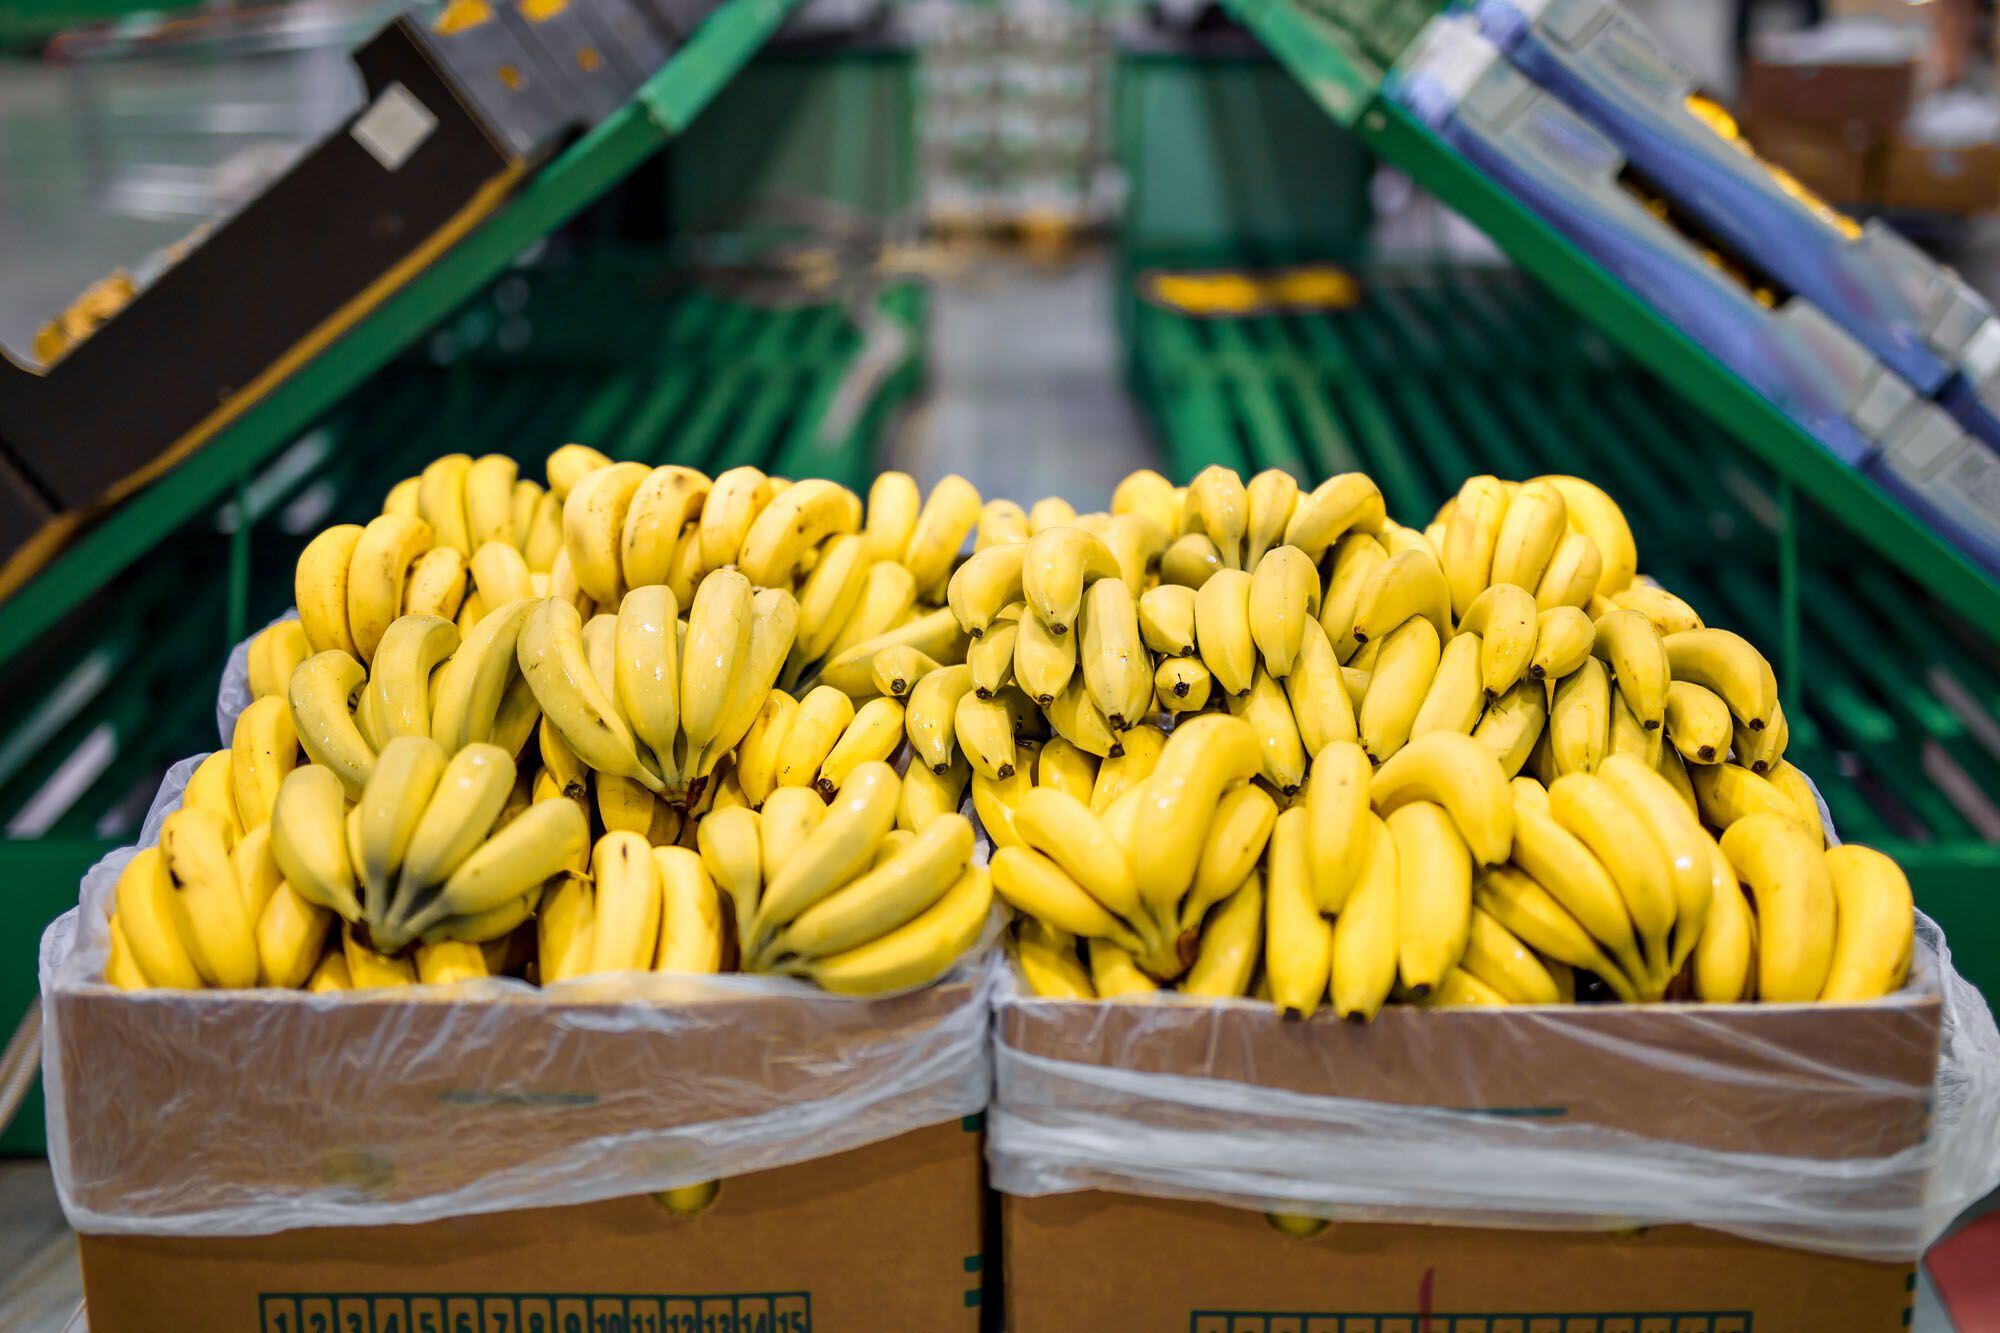 Acuerdo tras la falta de pago: las bananas de Paraguay volverán al mercado argentino